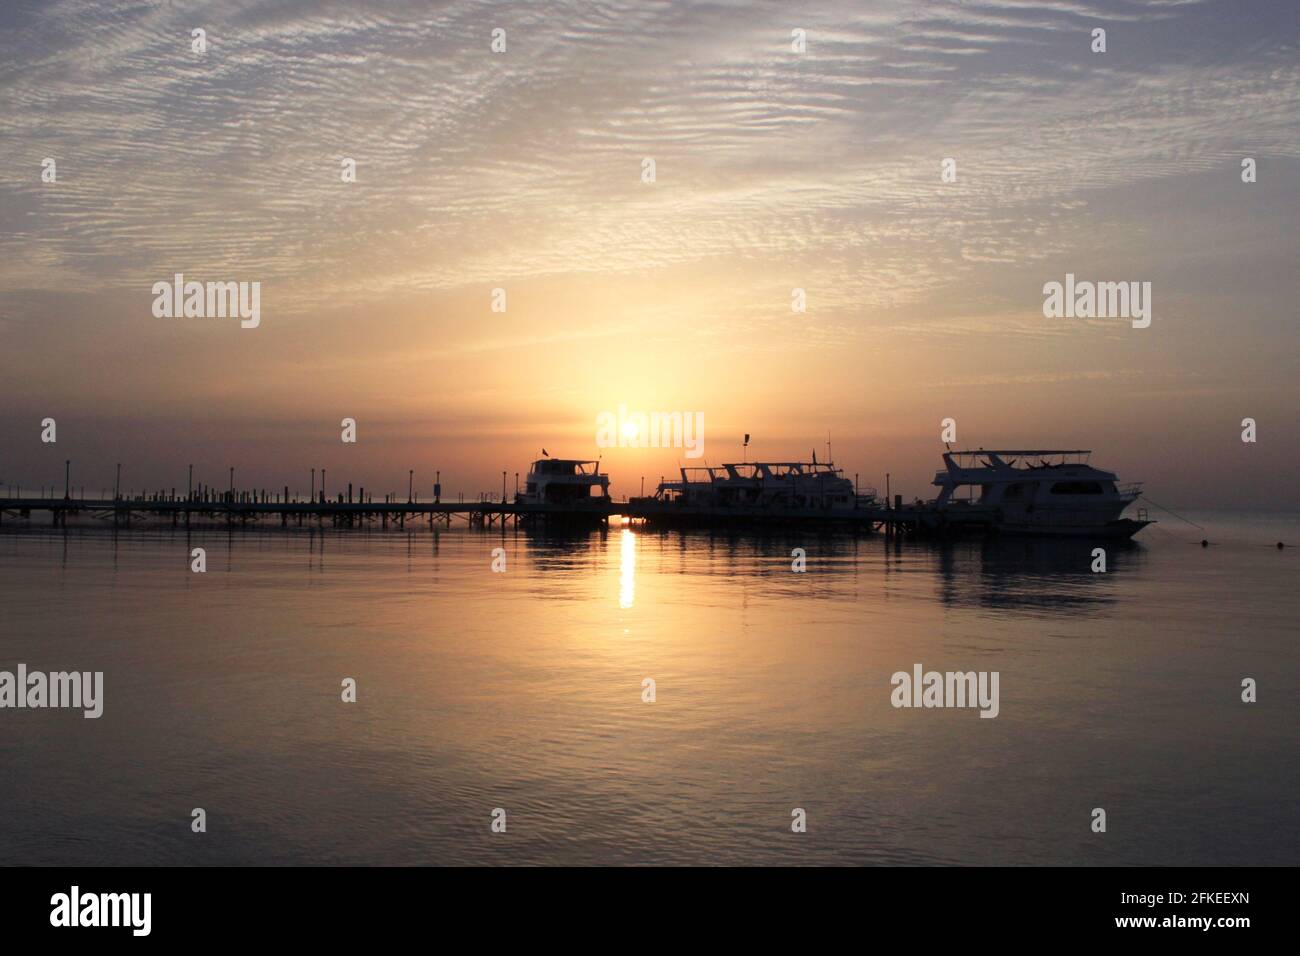 Sonnenaufgang auf dem Meer. Pier und Boote auf dem Wasser. Pier und Yachthafen mit Booten. Spiegelung der Sonne im Wasser. Rotes Meer, Safaga, Ägypten. Stockfoto